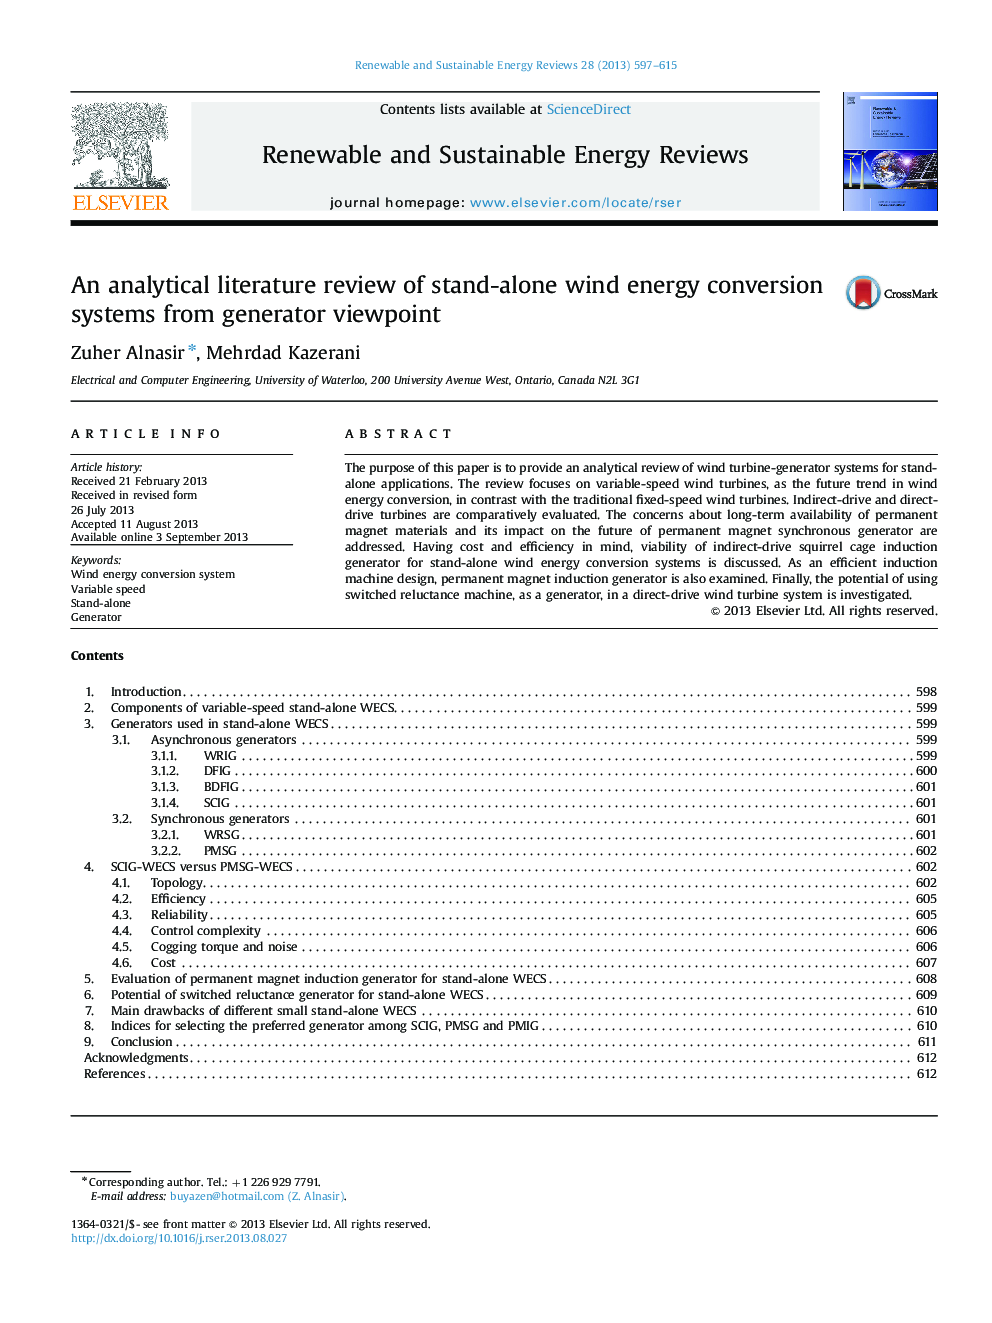 یک بررسی ادبی تحلیلی از سیستم های تبدیل انرژی باد جدا از دیدگاه ژنراتور 